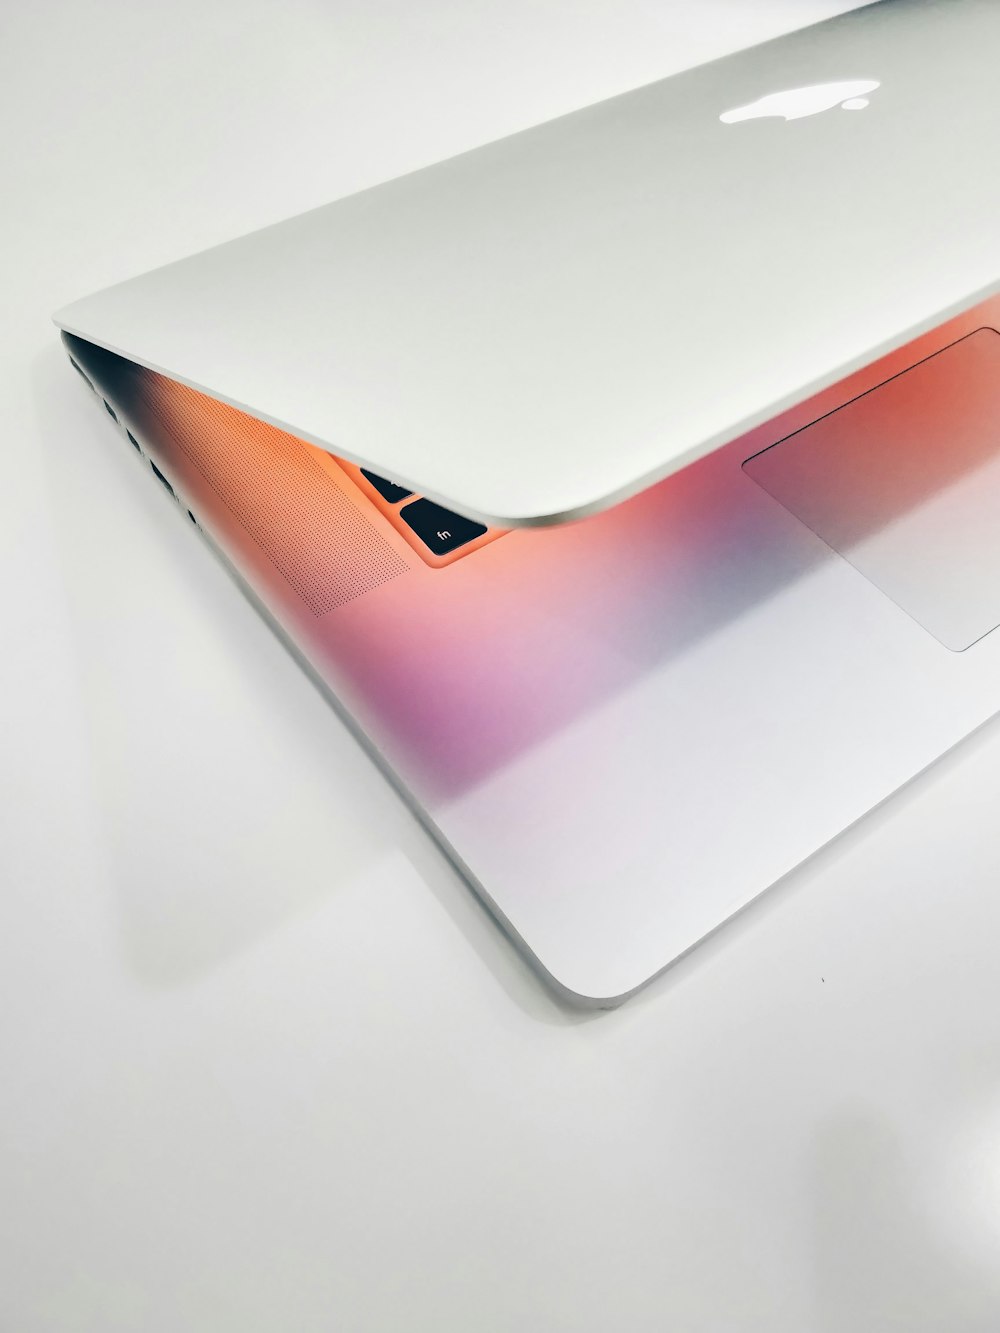 Apple MacBook air auf Holzoberfläche